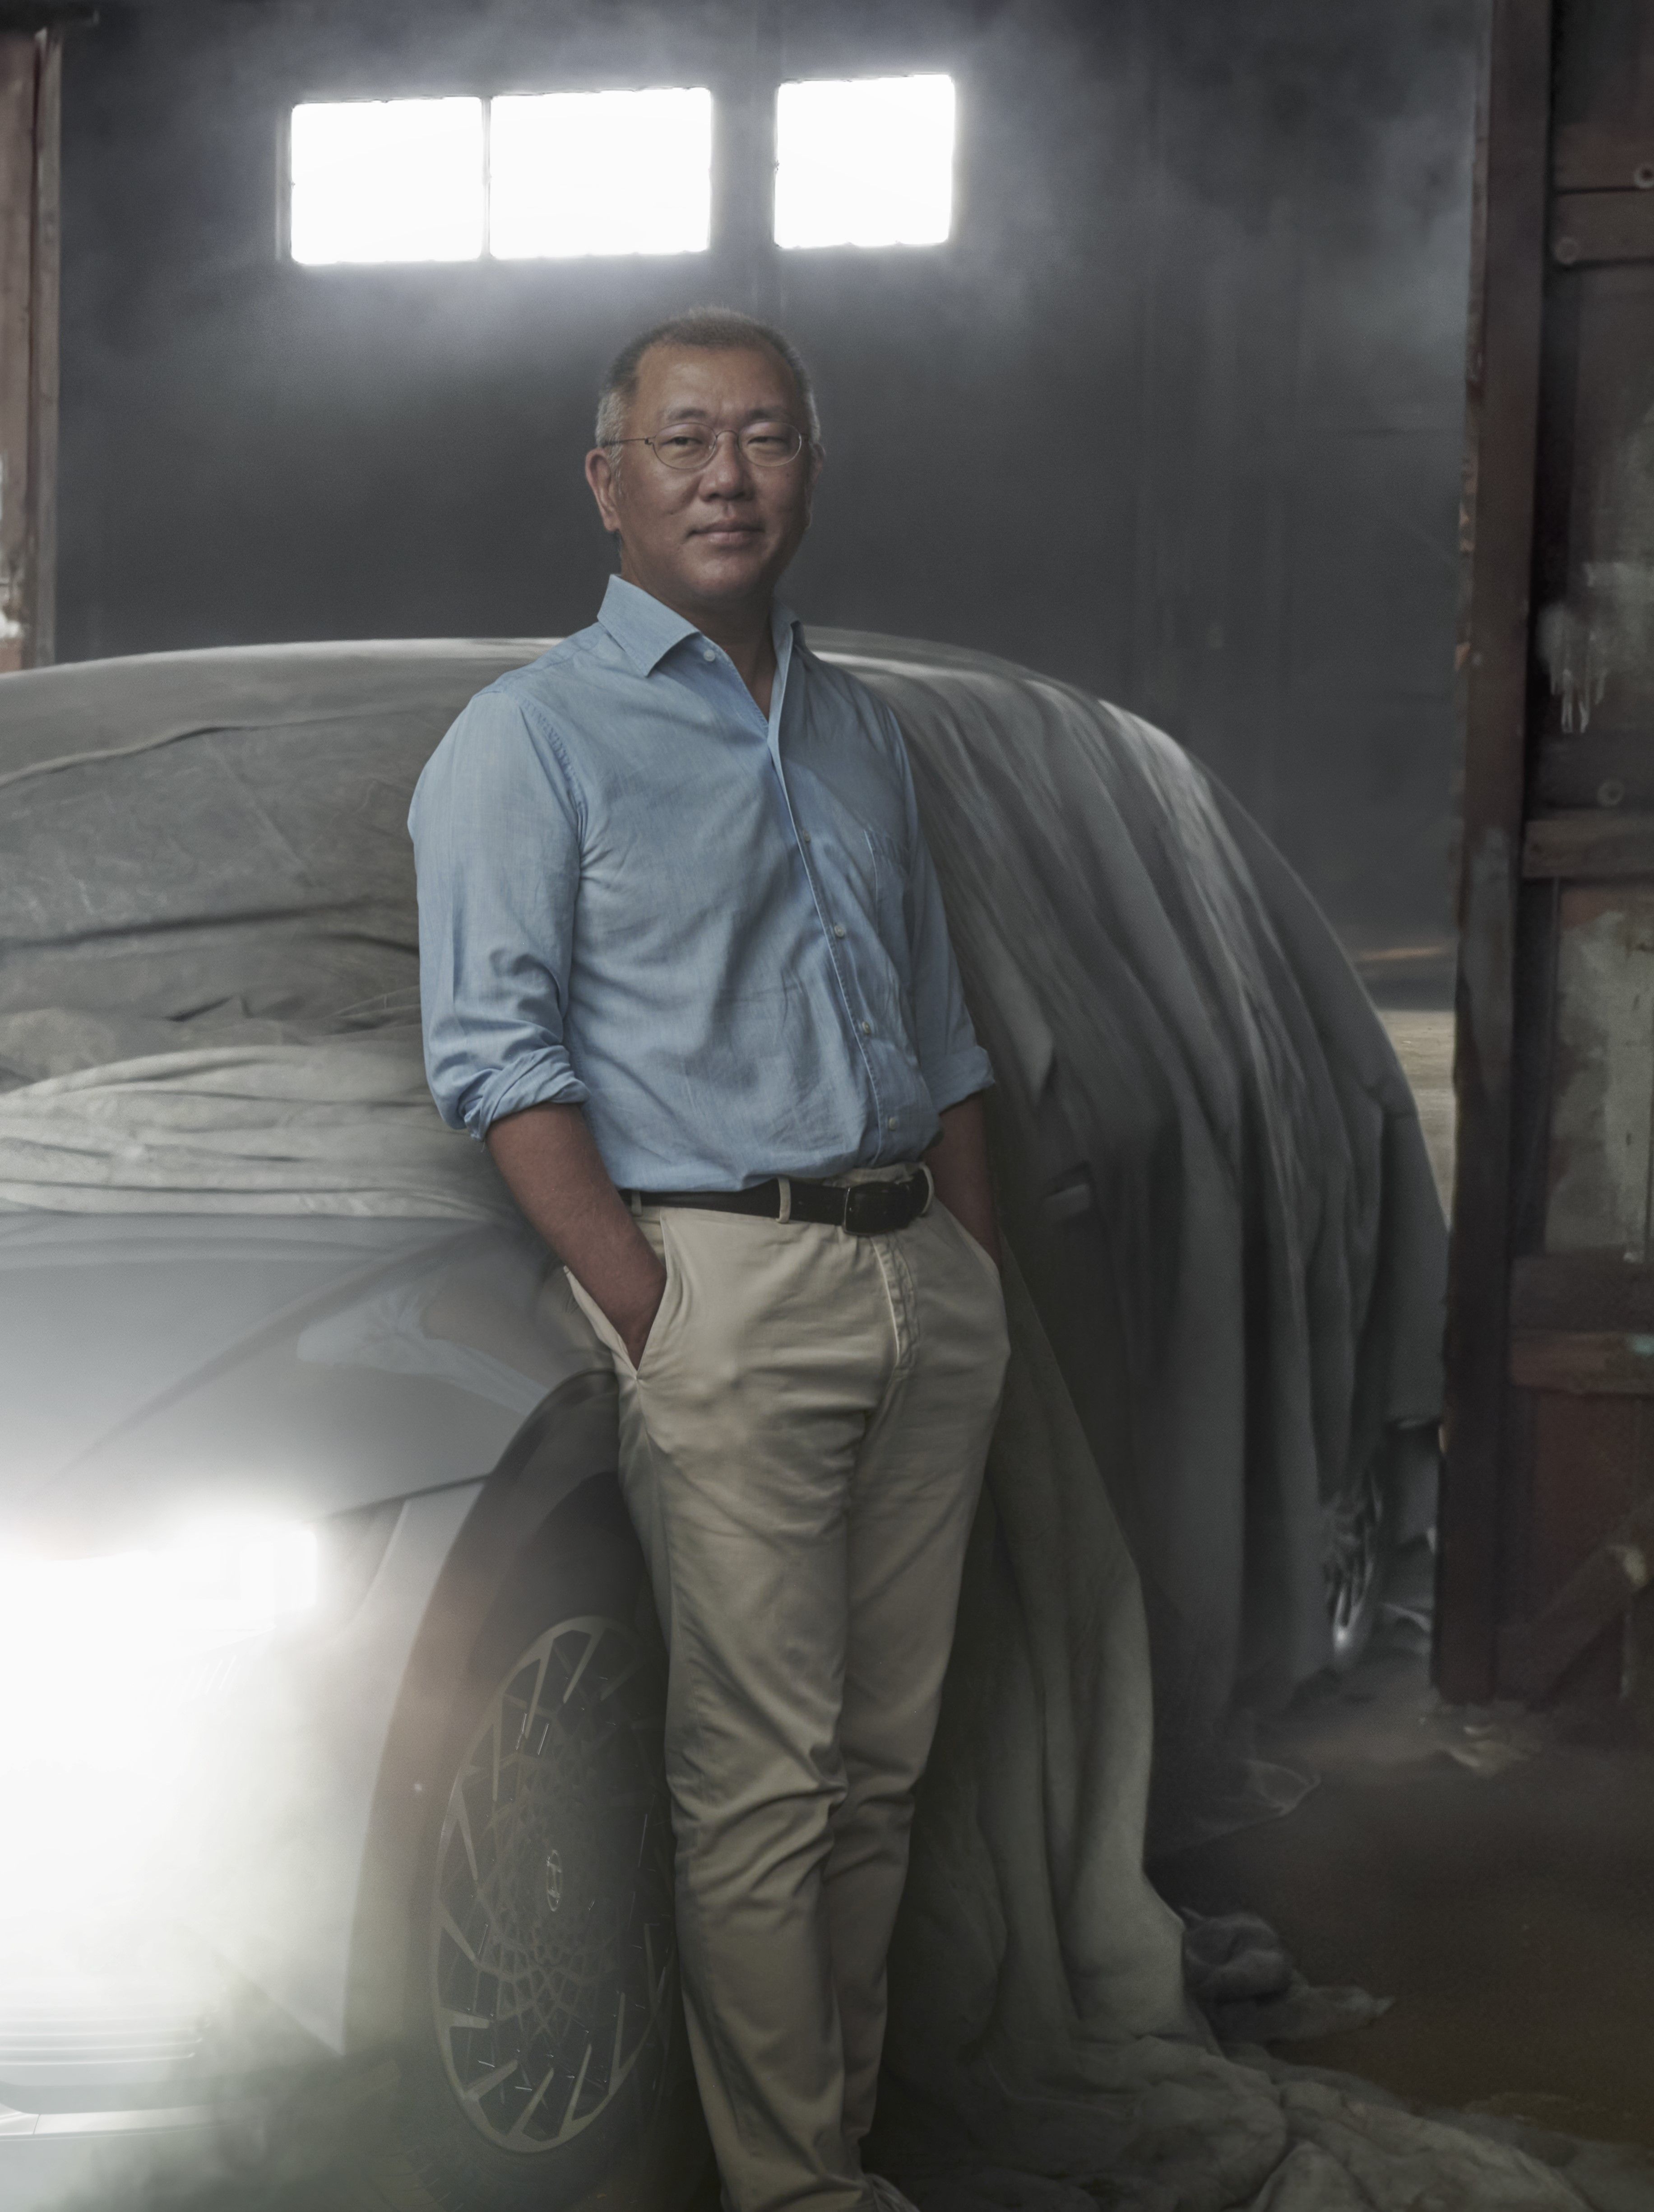 Légende et crédit : Euisun Chung, présidente exécutive de Hyundai Motor Group en Californie (2021 © Annie Leibovitz)